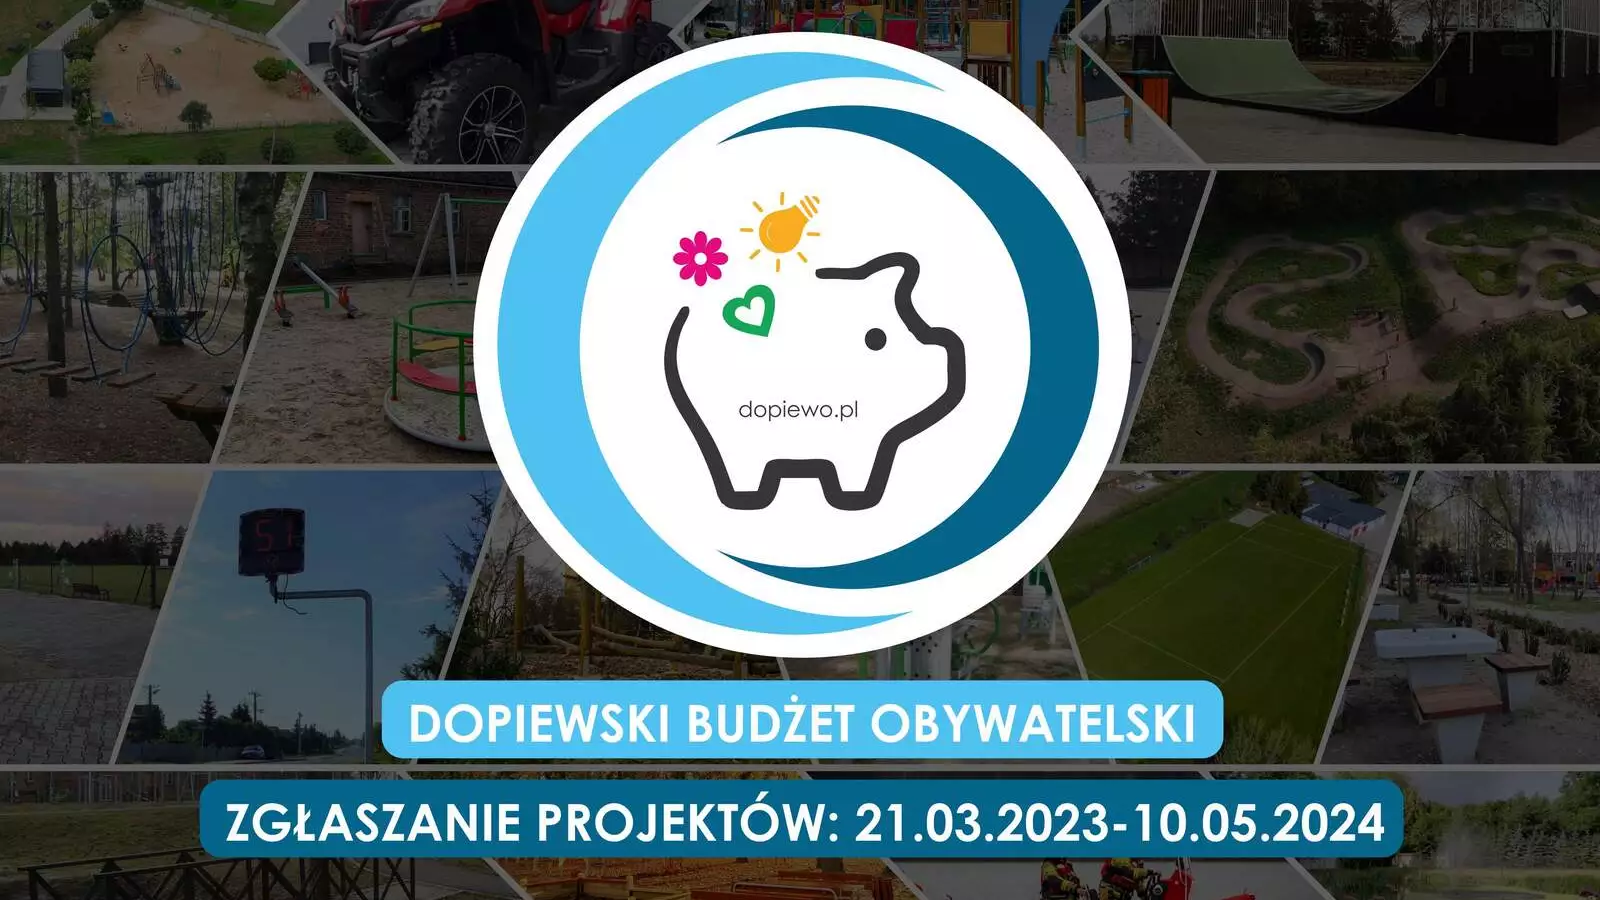 Dopiewski Budżet Obywatelski - zgłoś swój projekt do 10 maja 2024 r.